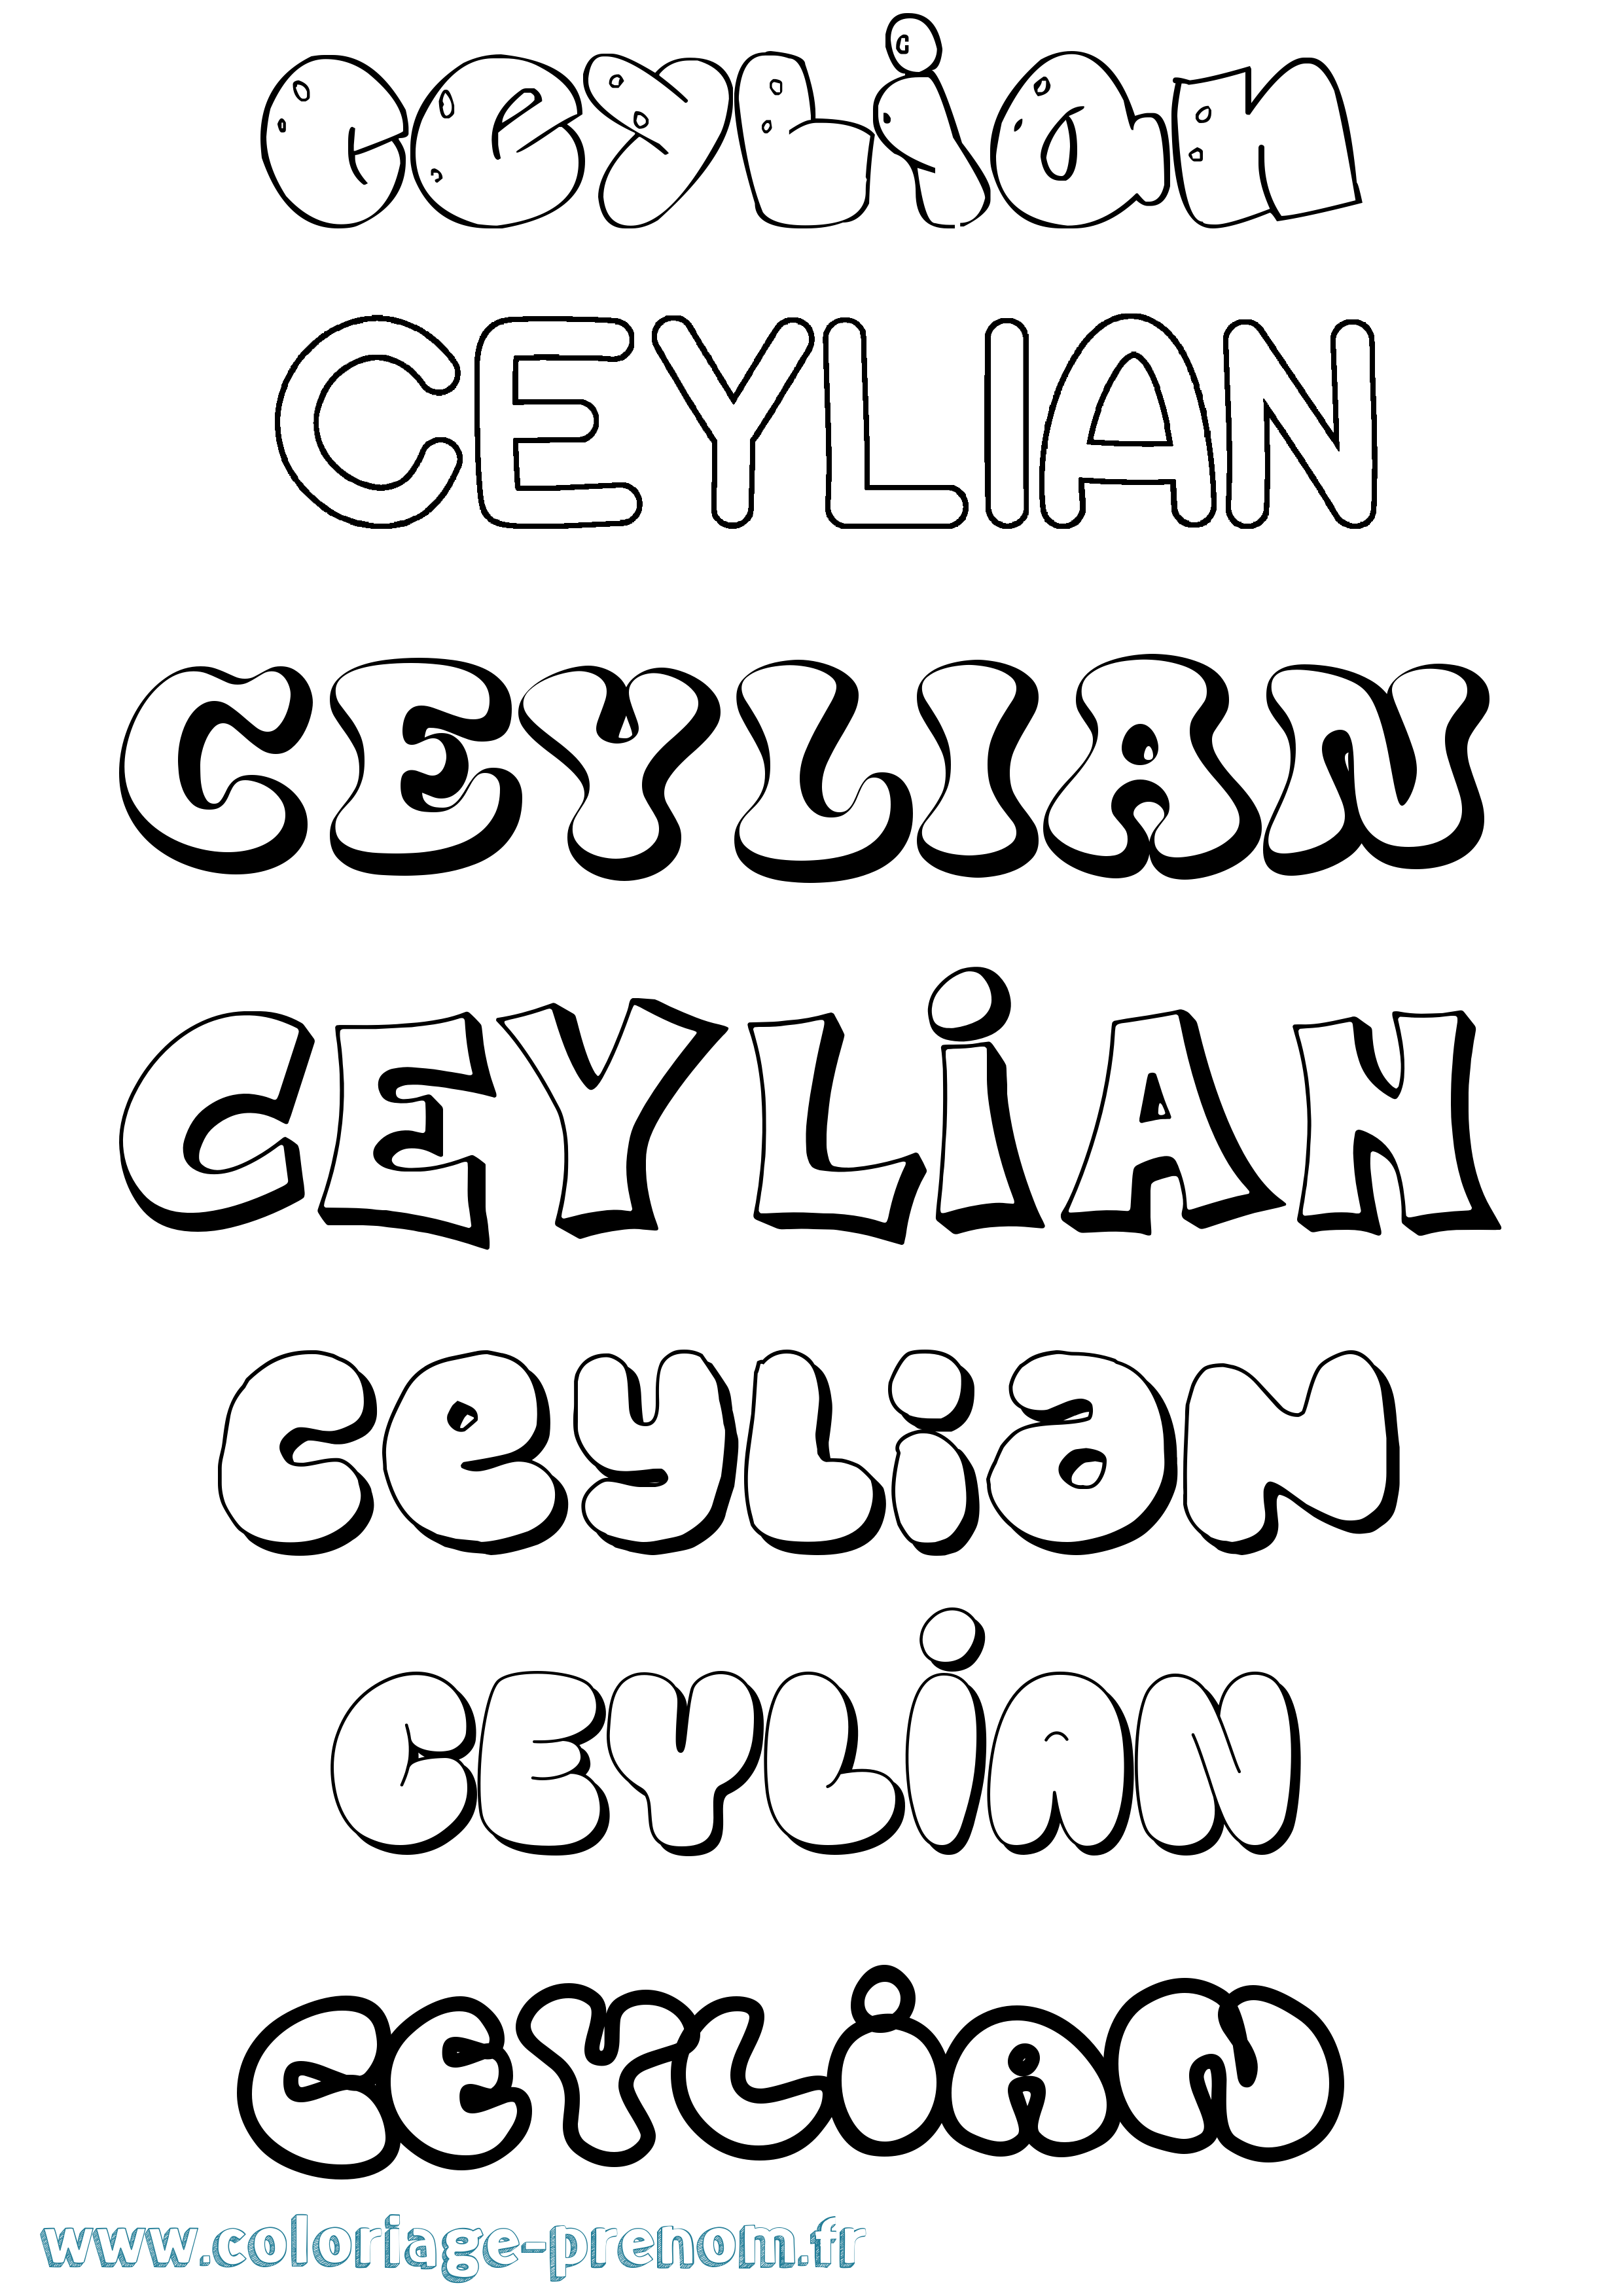 Coloriage prénom Ceylian Bubble